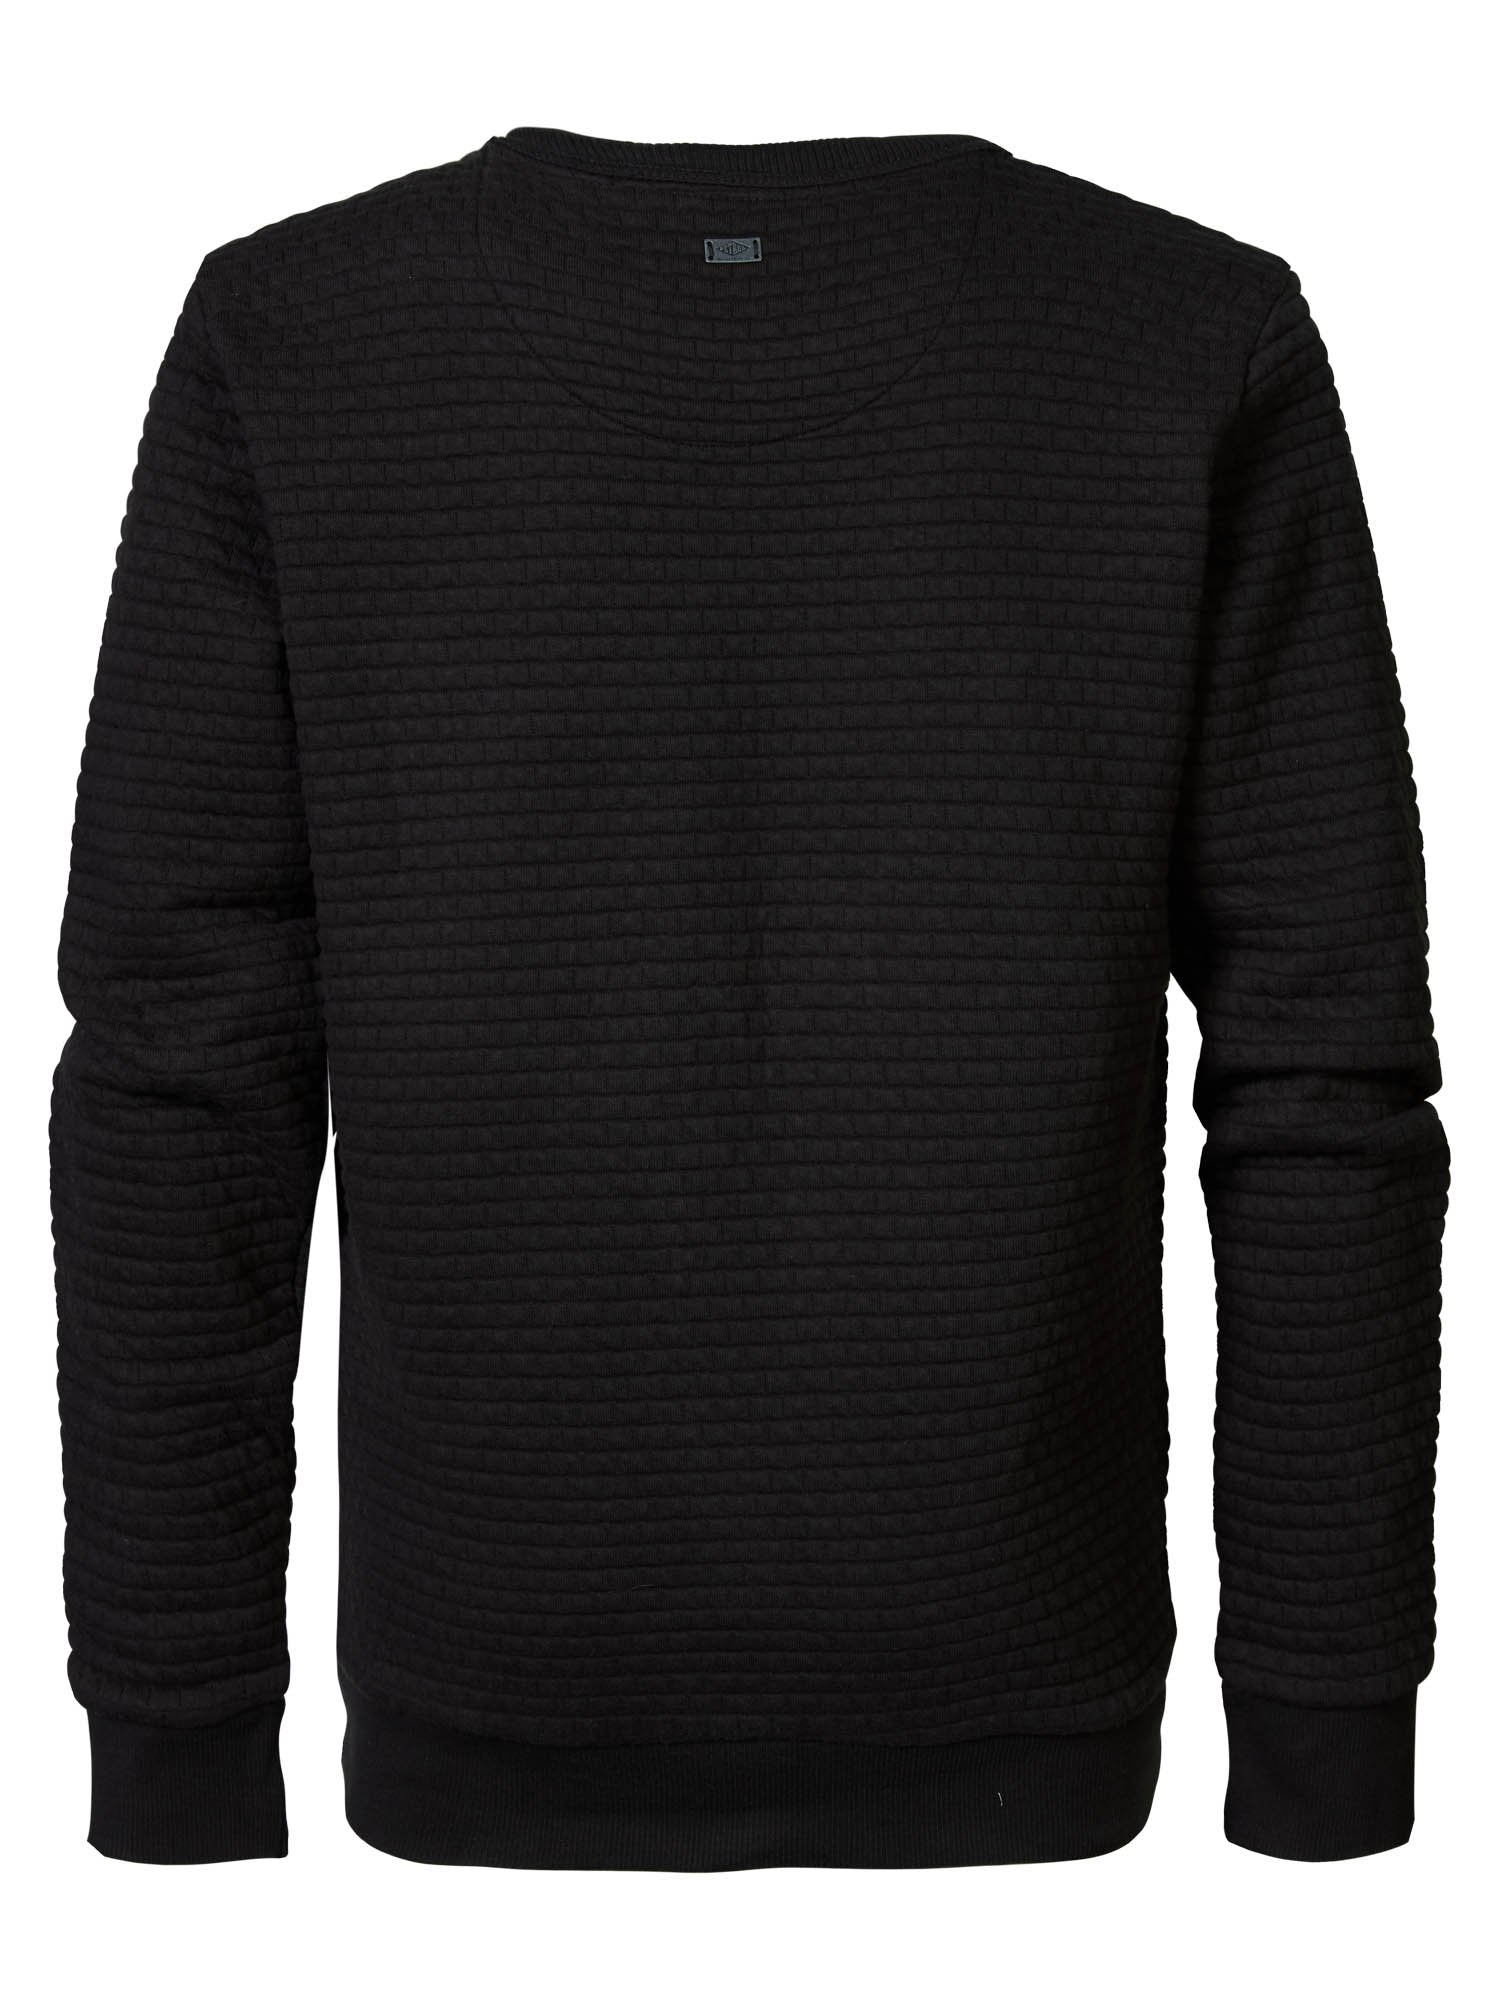 Jongens Sweater R-Neck van Petrol in de kleur Caramel in maat 176.